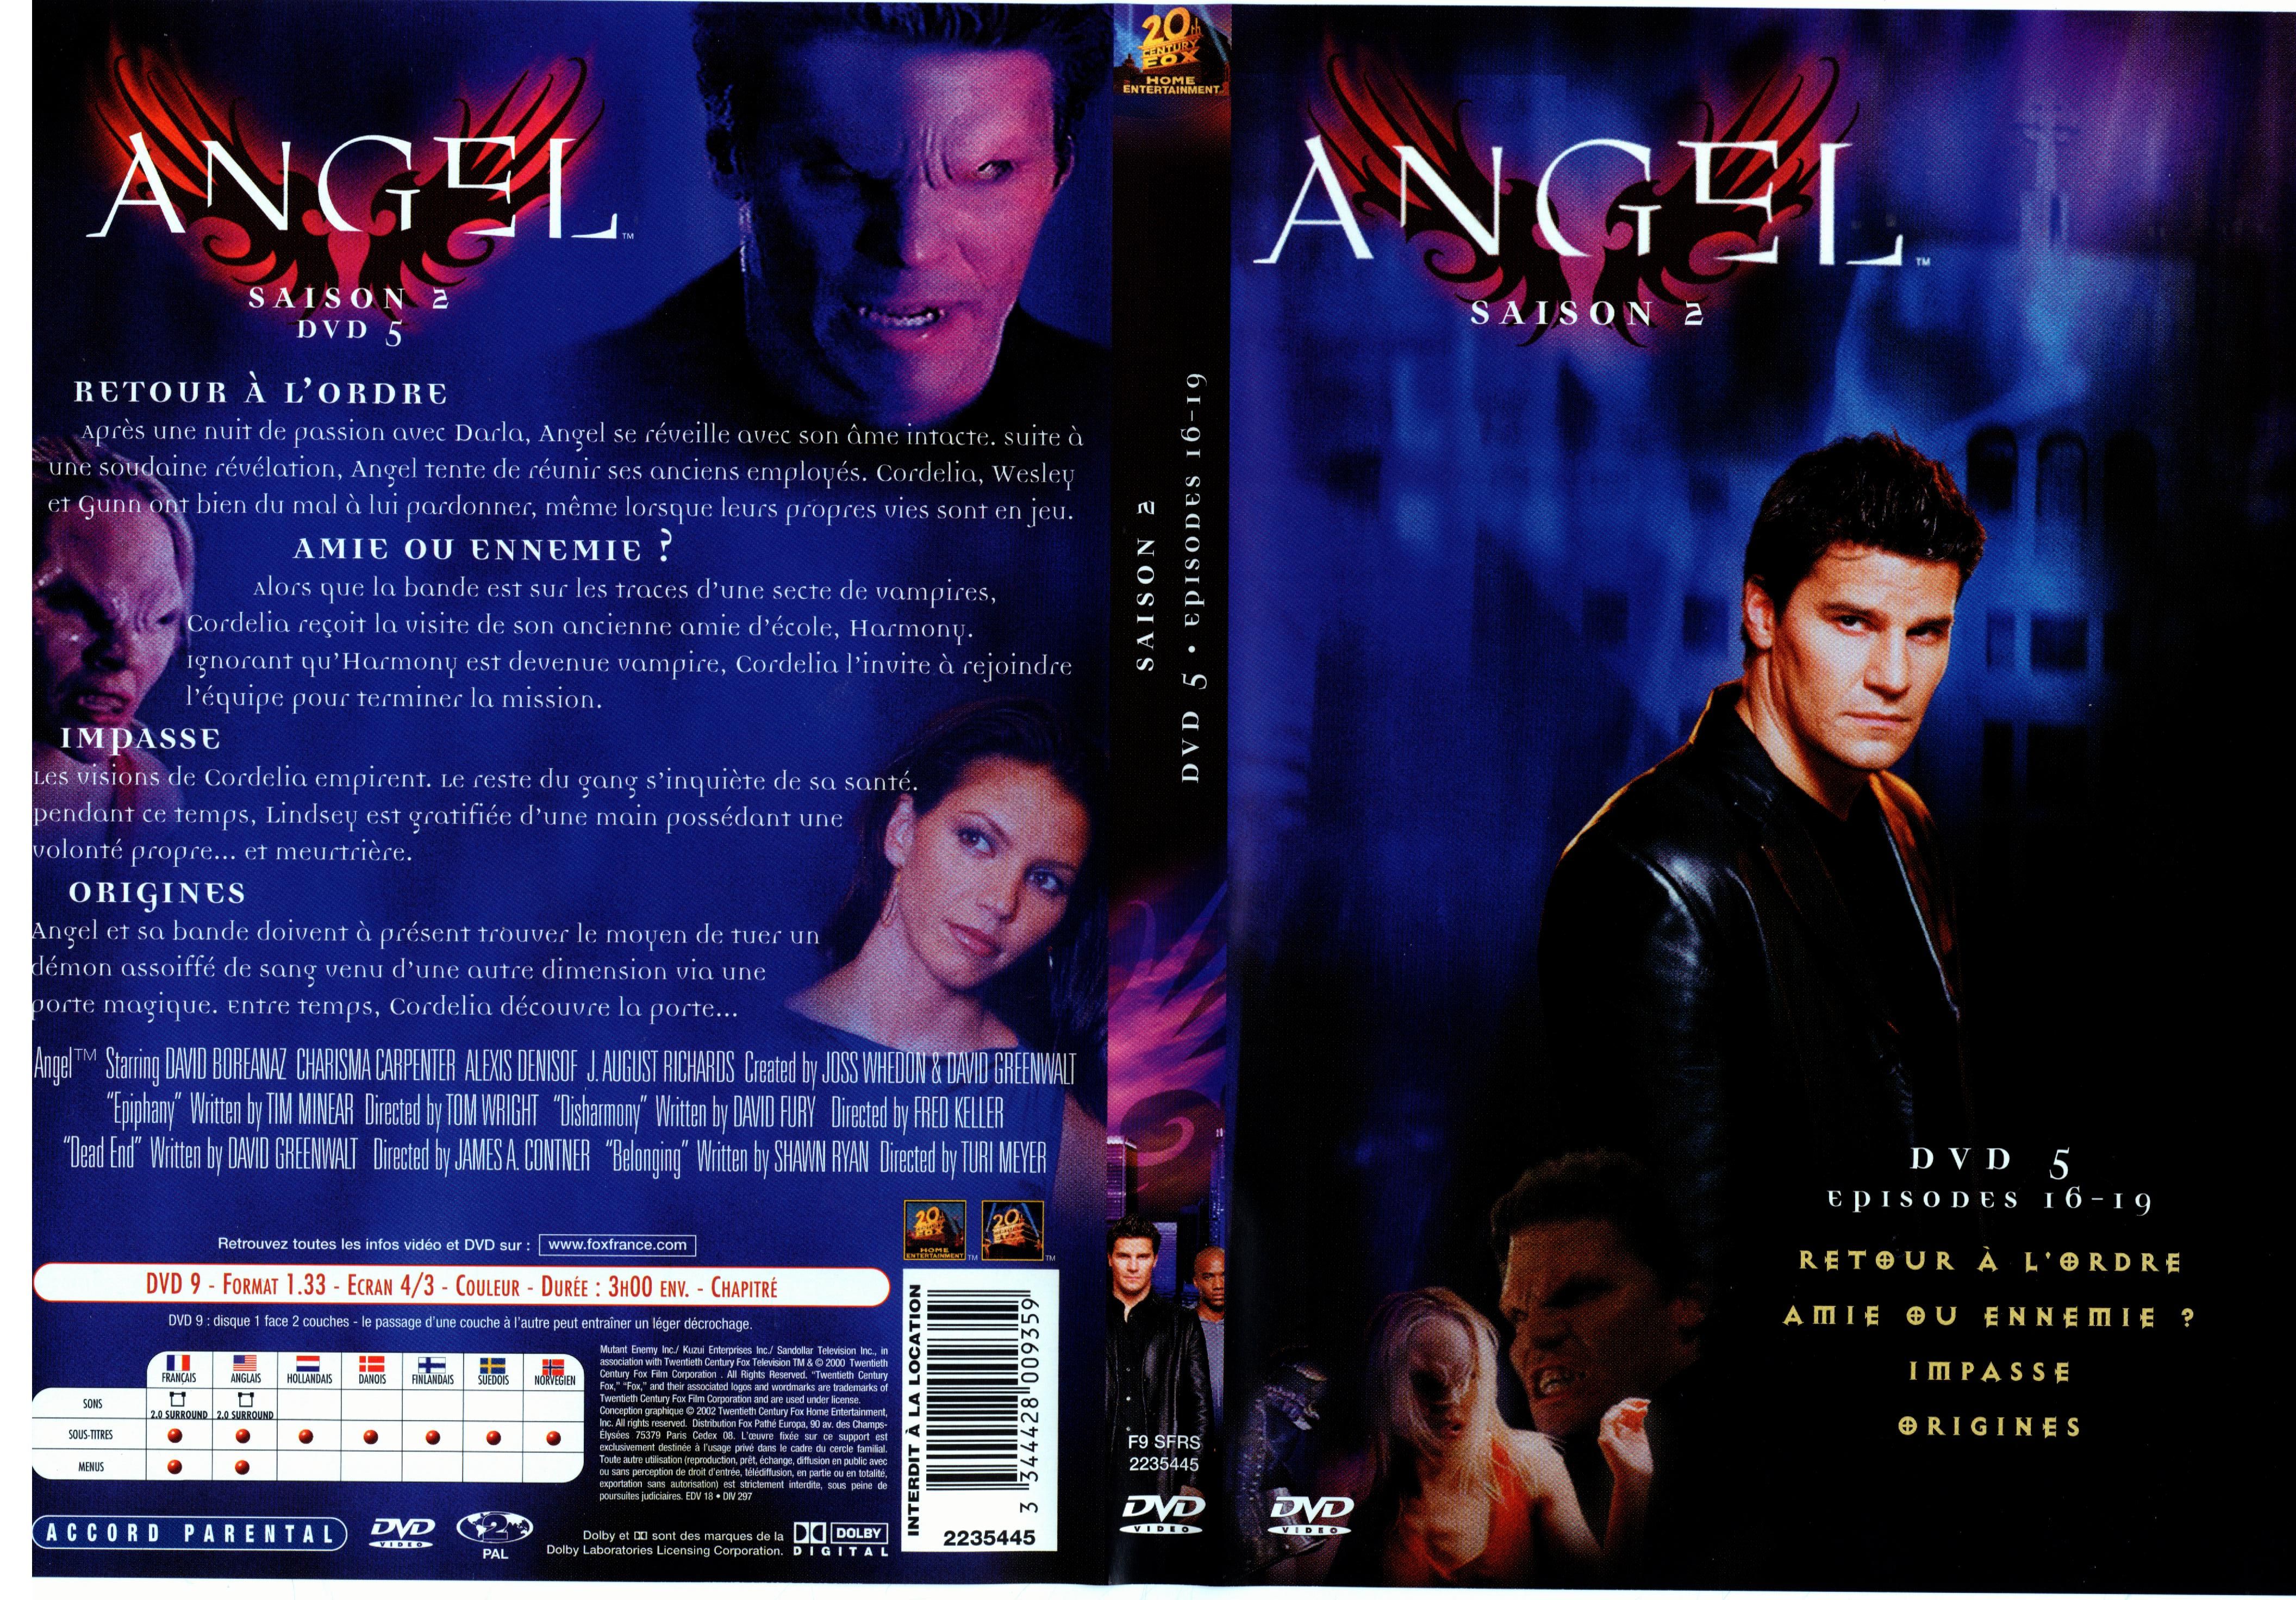 Jaquette DVD Angel Saison 2 dvd 5